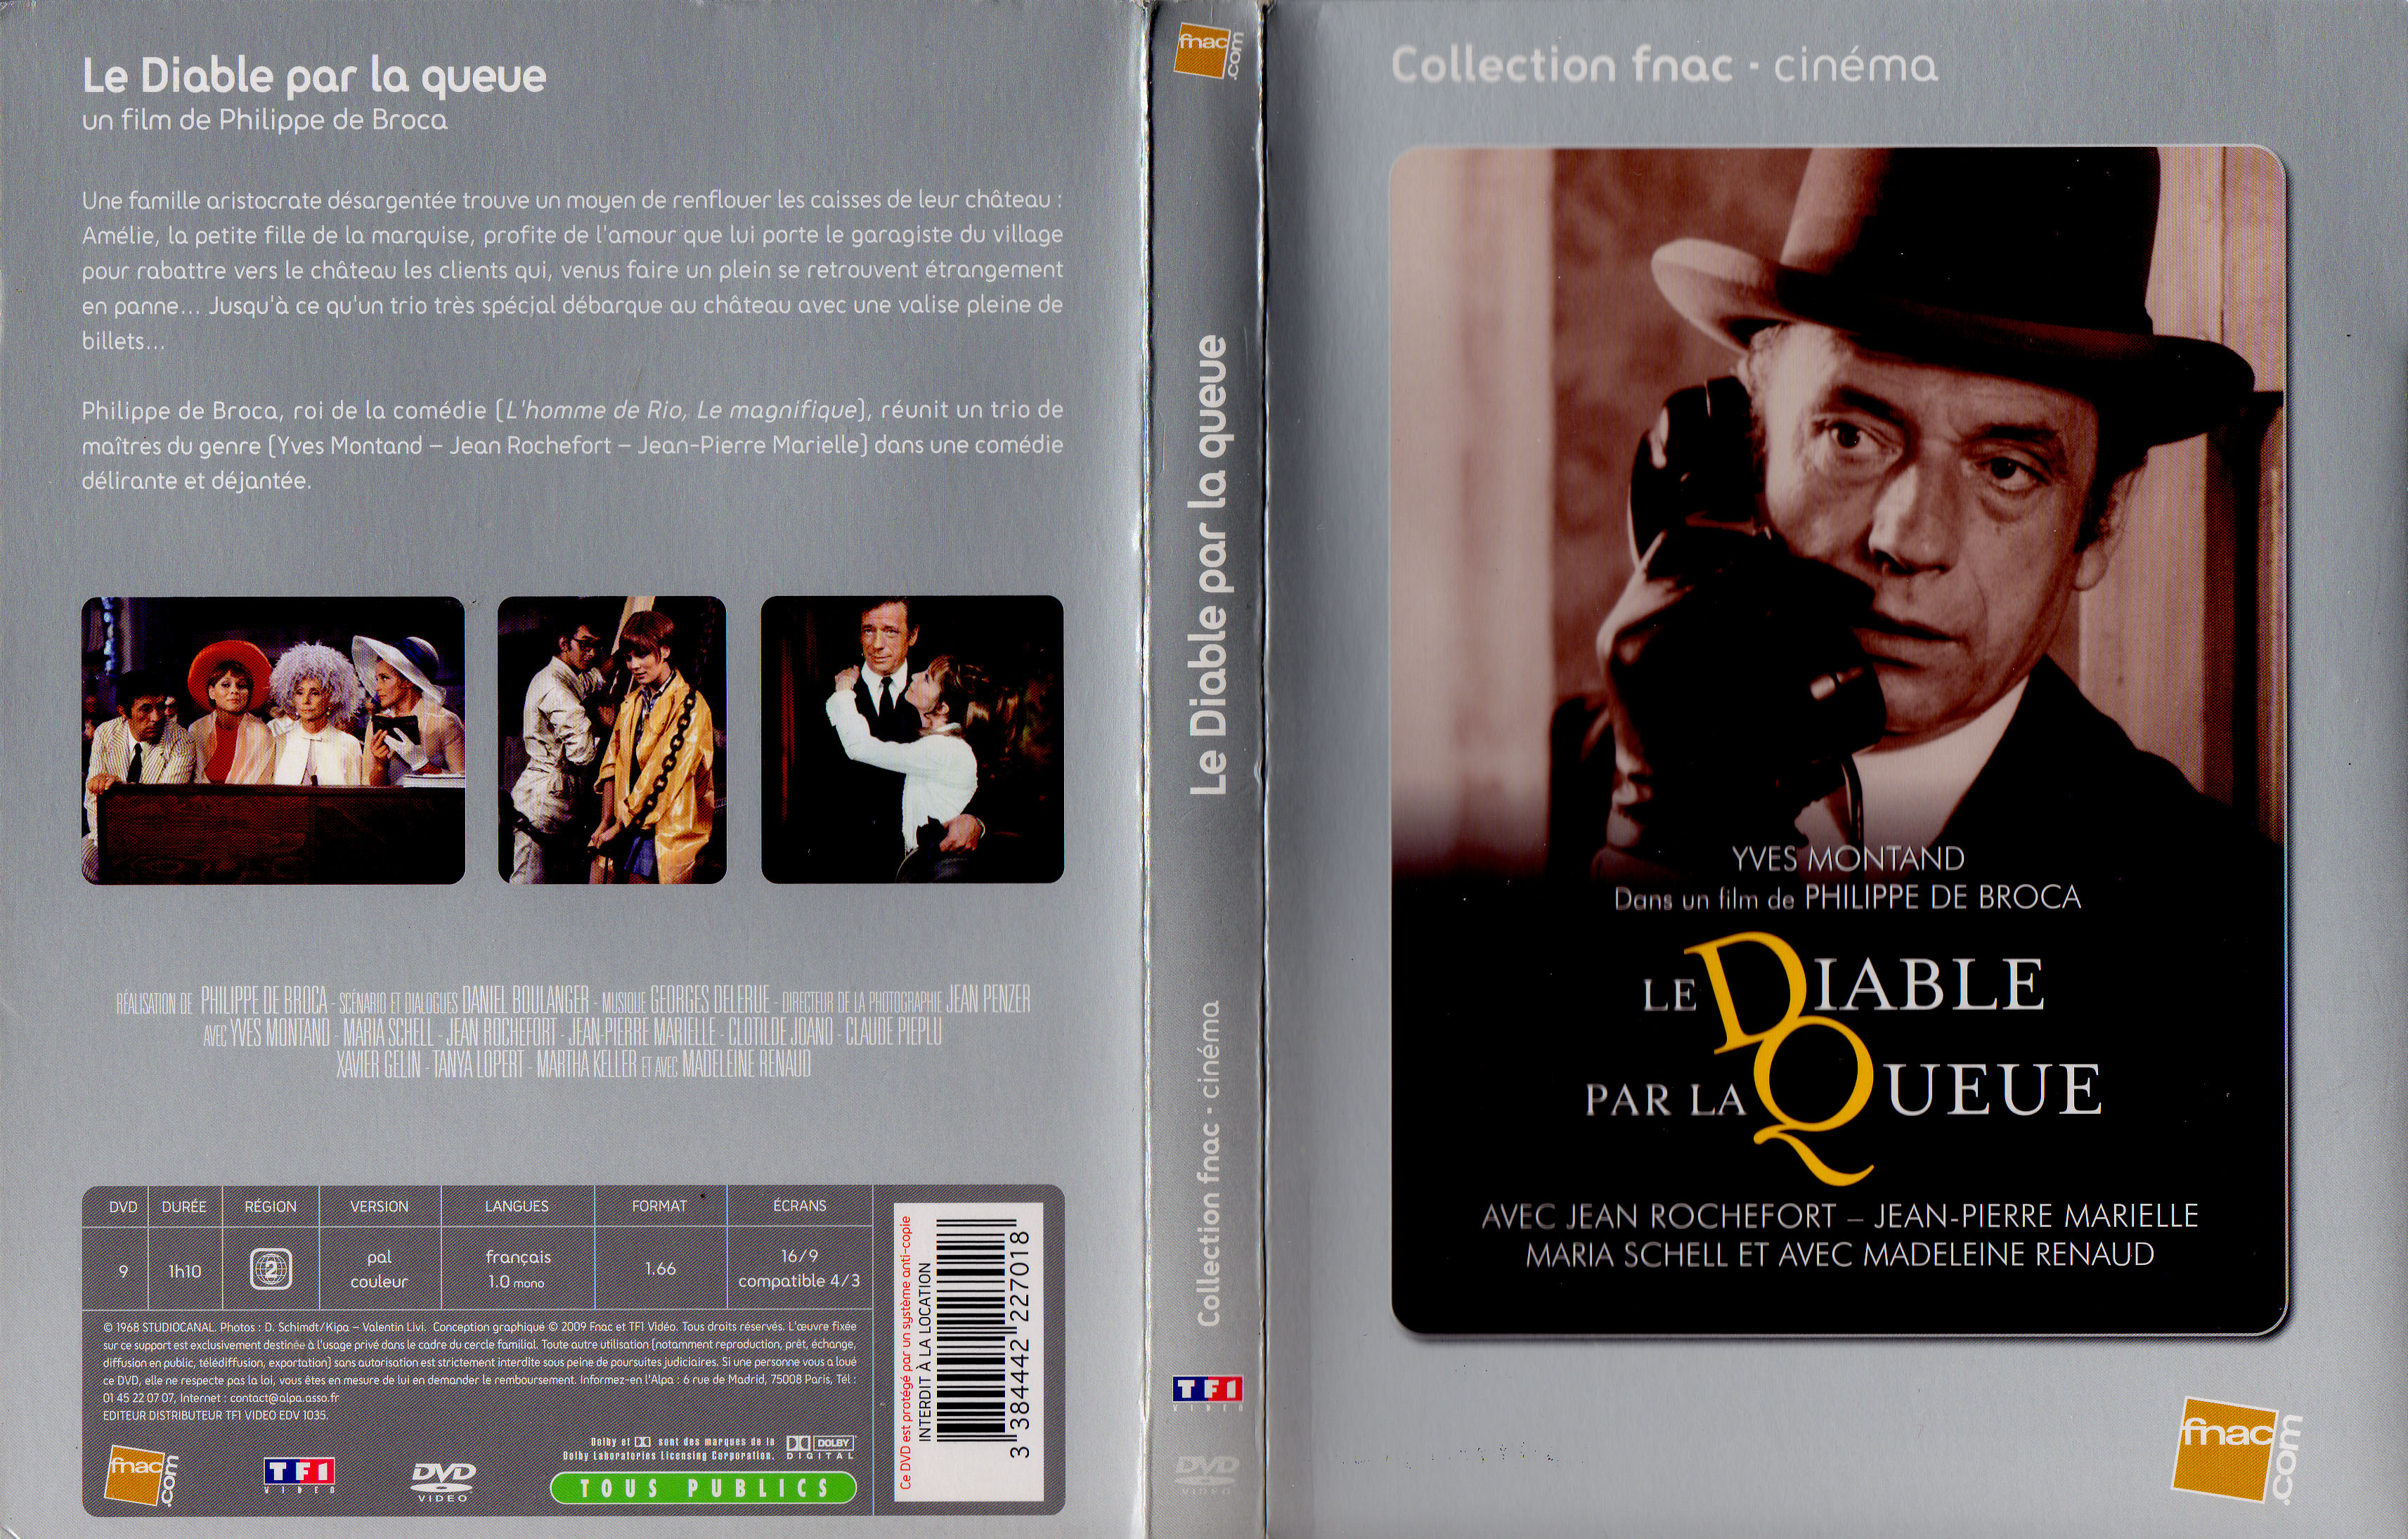 Jaquette DVD Le diable par la queue v2